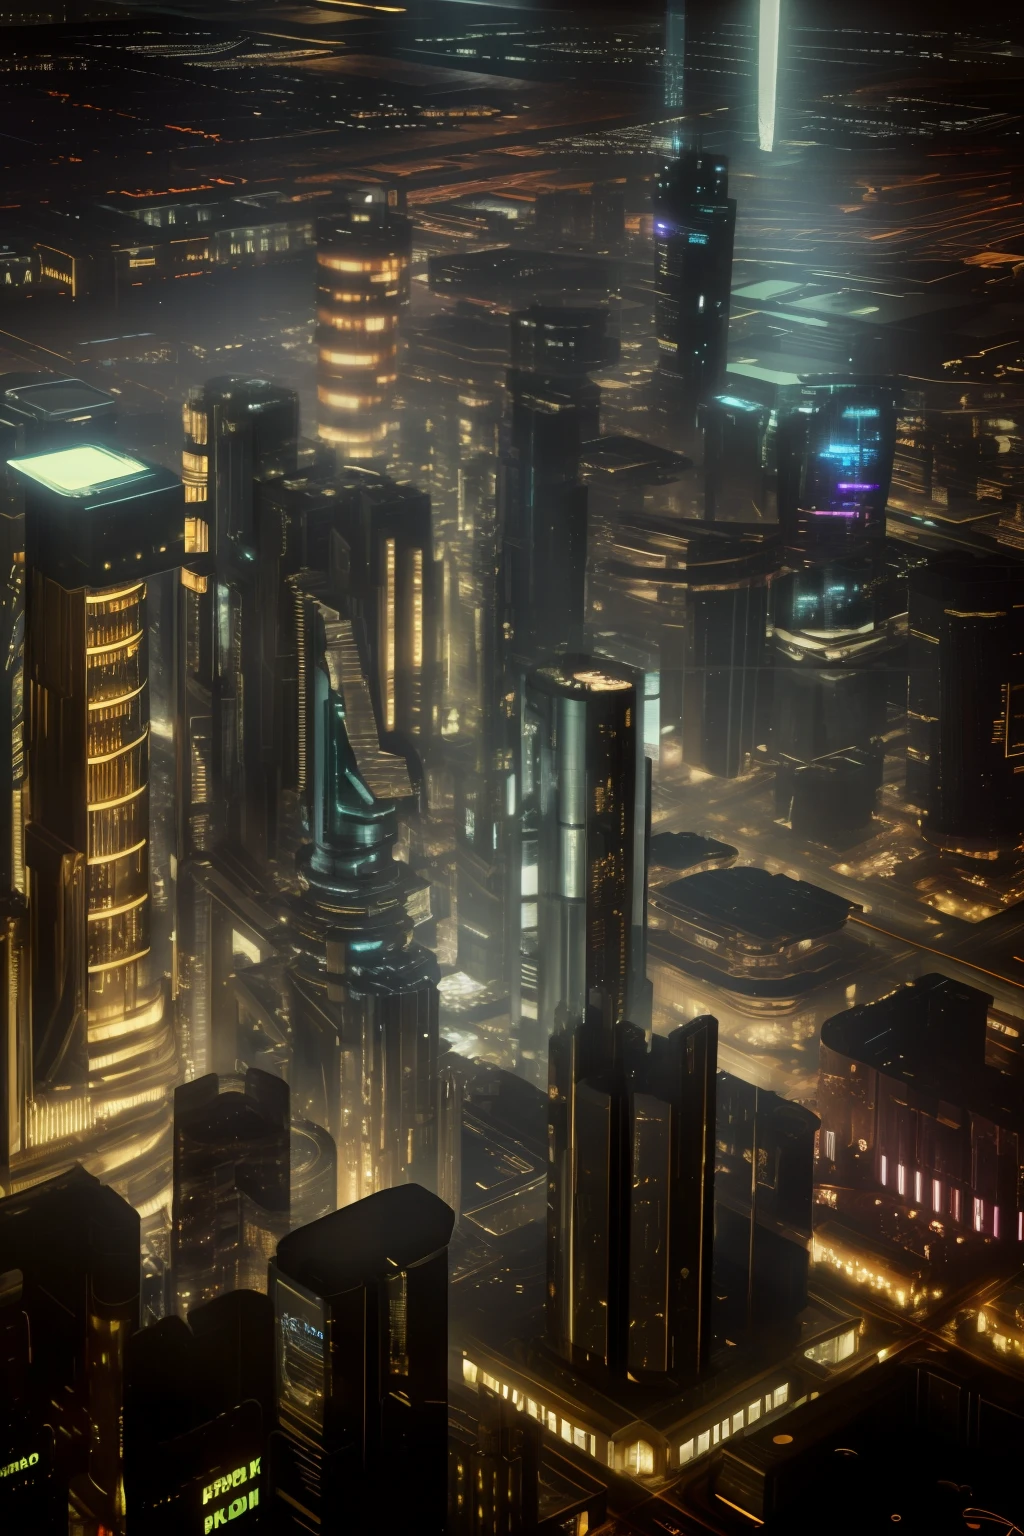 Hohe Auflösung, Meisterwerk, gute Qualität, rich detail, 8K Hintergrundbild, cyberpunk city, steampunk style, Nacht mit vielen Gebäuden verstreut, Frontalaufnahme, Schuss von unten nach oben.